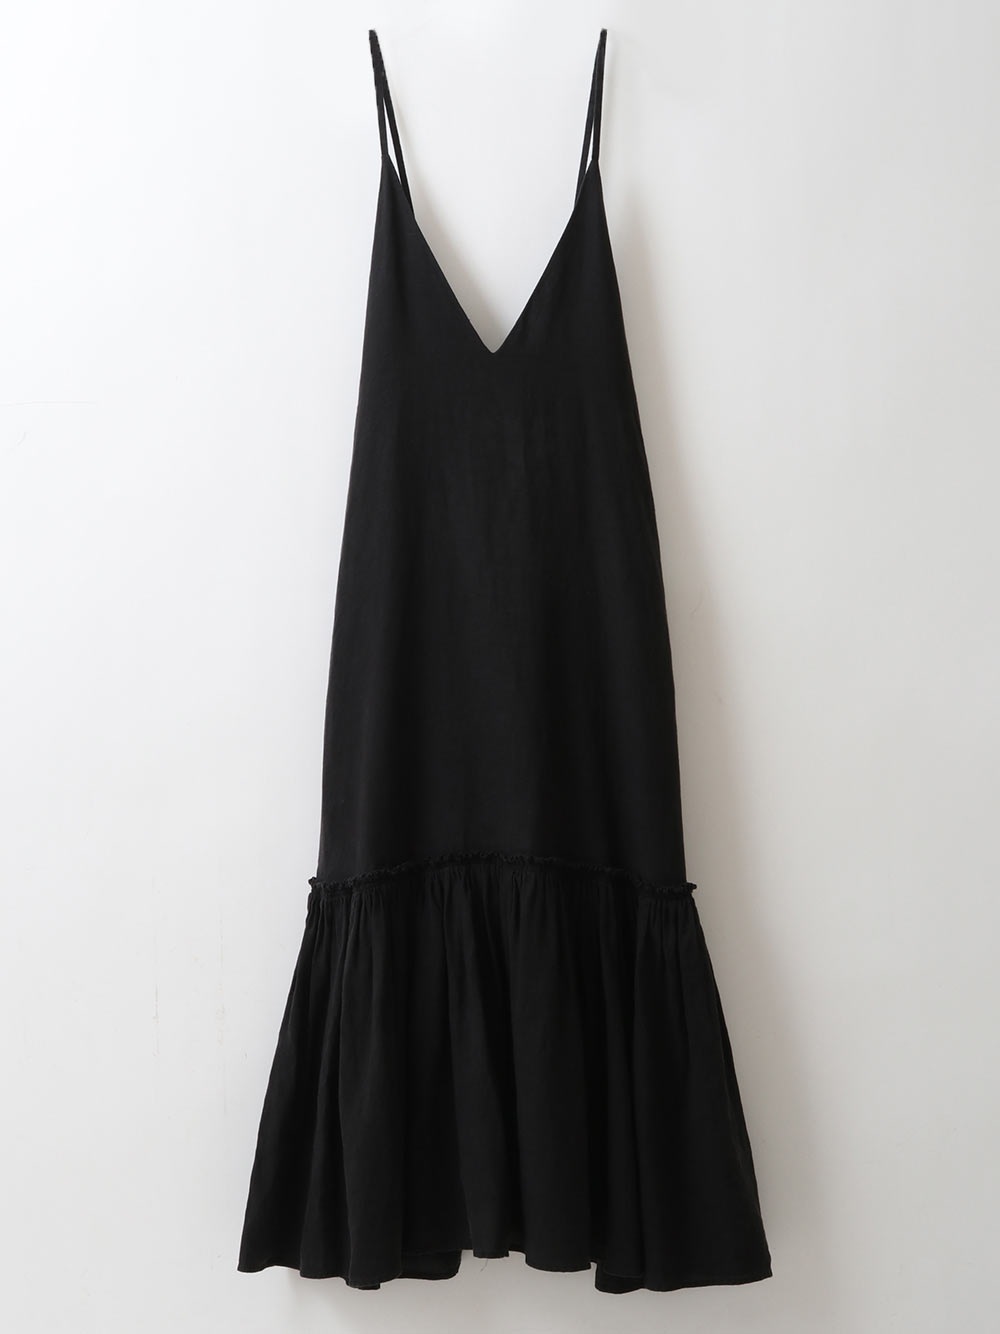 French Linen Strap Dress(00ブラック-フリー)